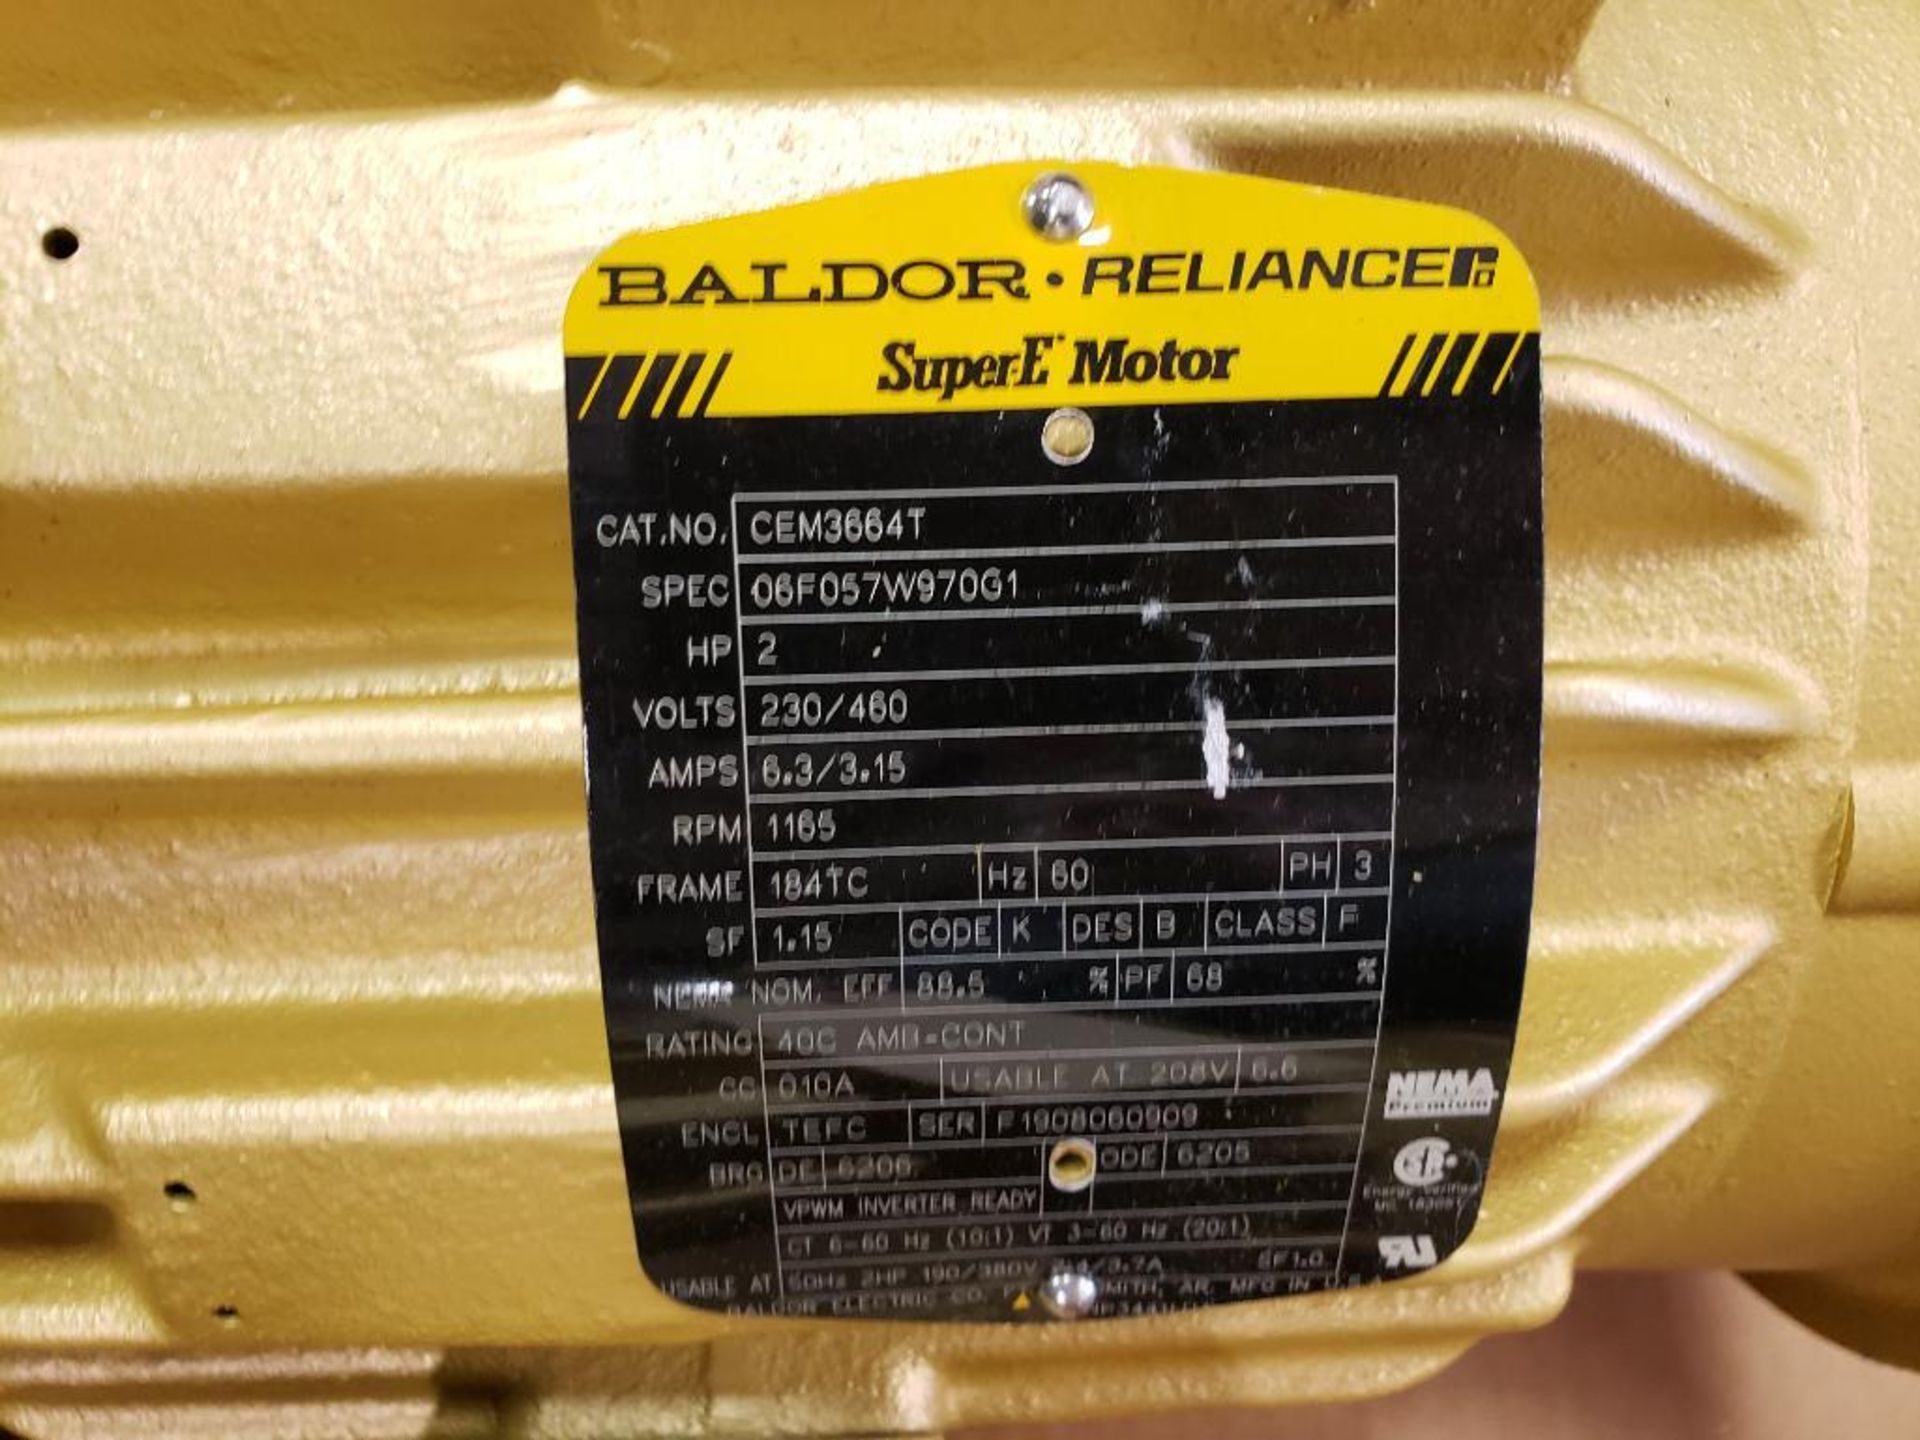 2HP Baldor Reliance SuperE Motor CEM3664T. 3PH, 230/460V, 1165RPM. New no box. - Image 2 of 5